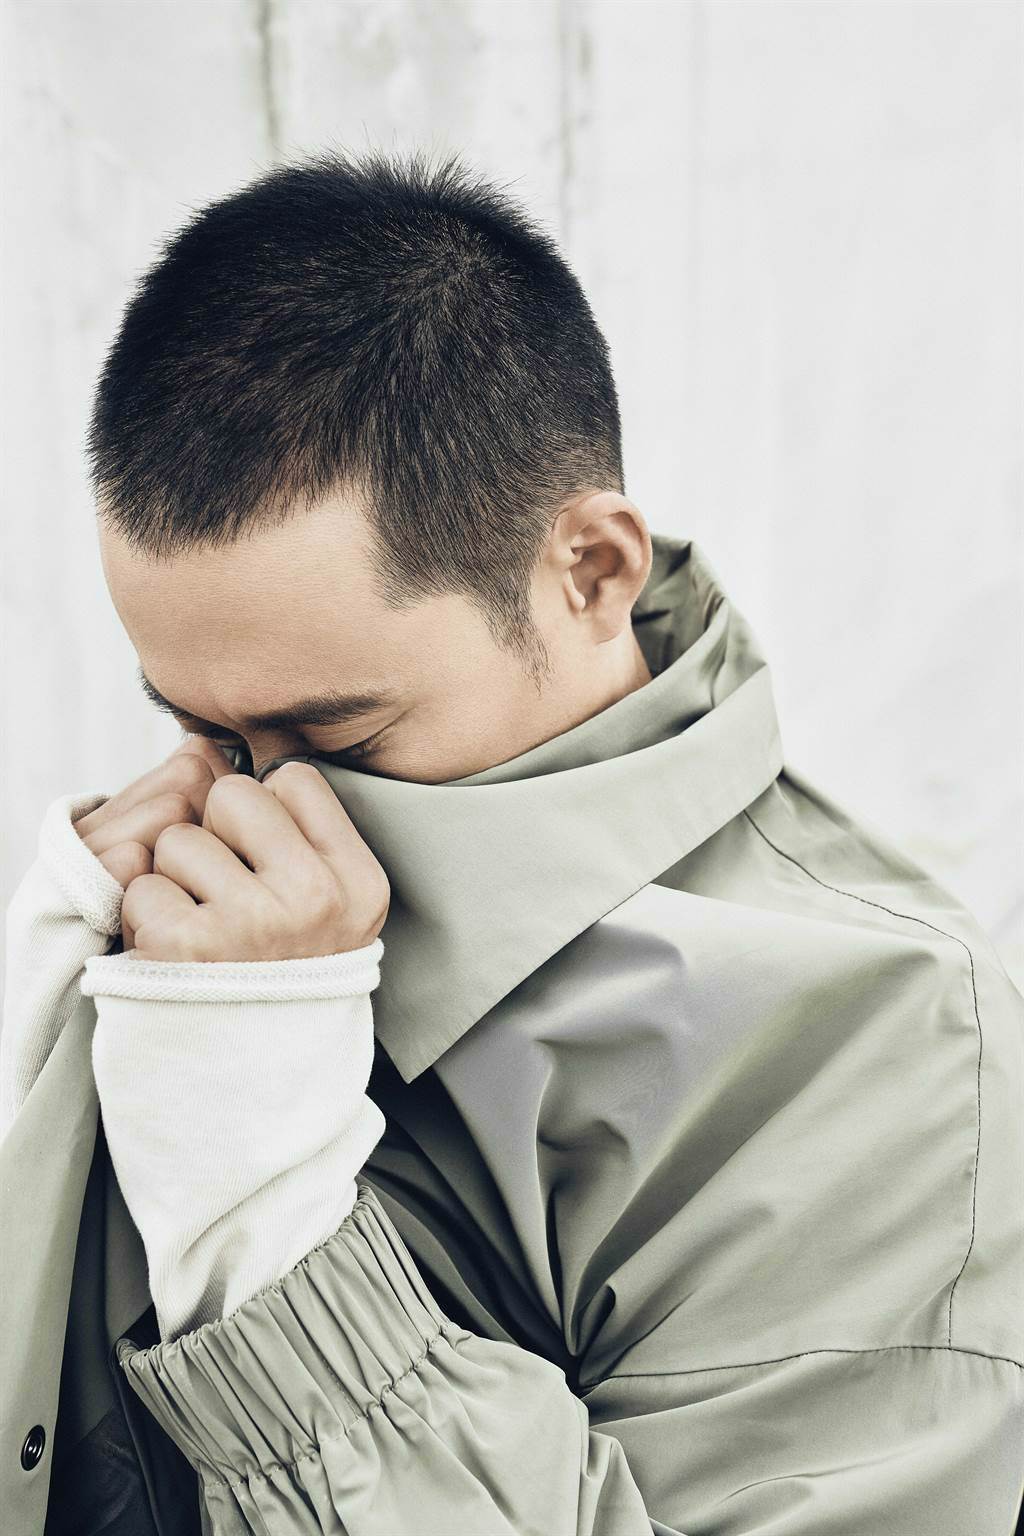 浩子將於本月底推出個首張專輯《共你惜惜》。（時代創意提供）